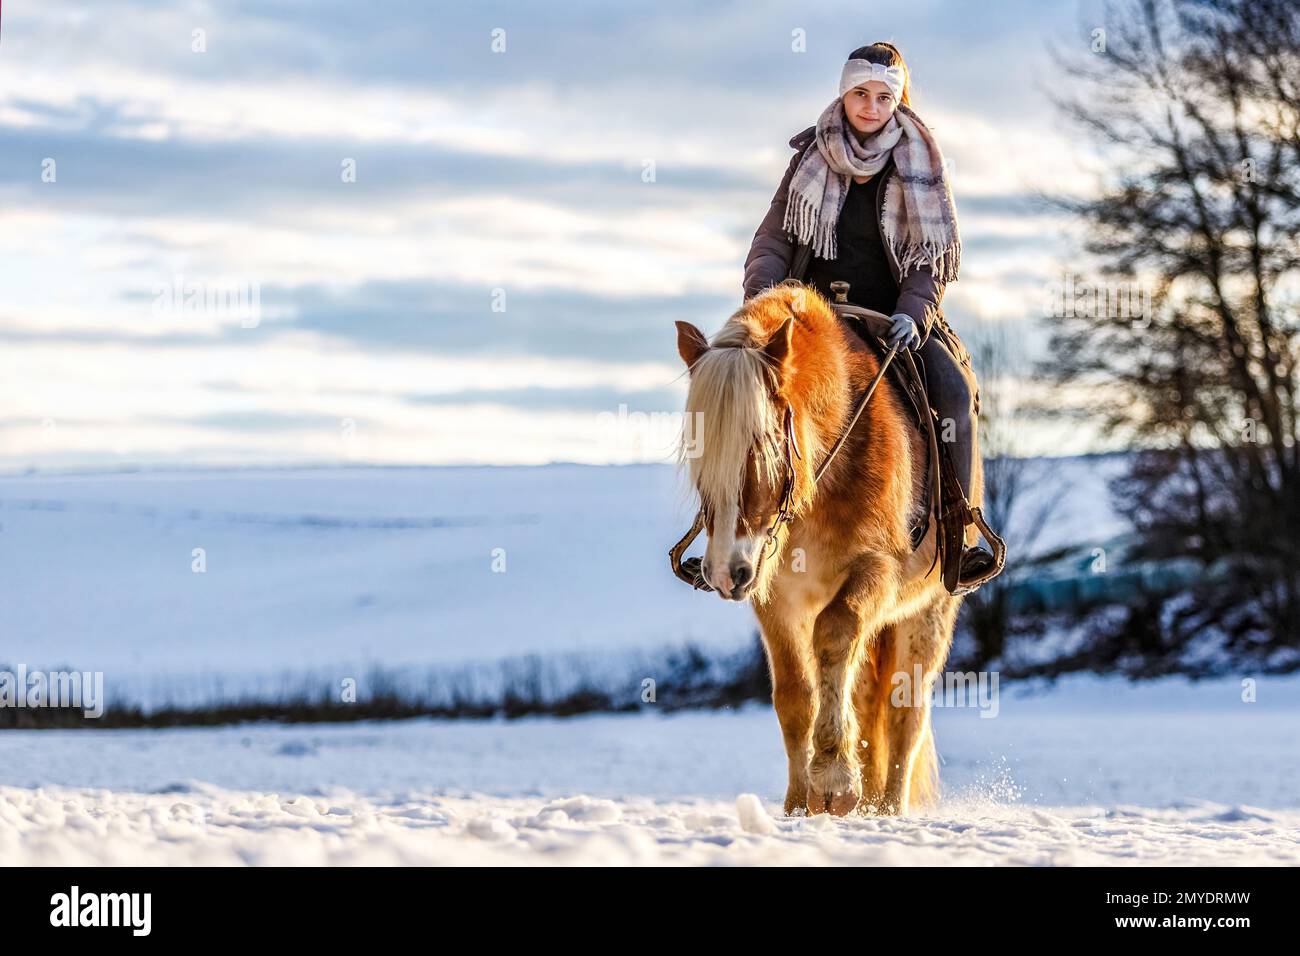 Süße Pferde- und Freundschaftsszene: Ein junges Mädchen im Teenageralter interagiert im Winter vor einer verschneiten ländlichen Landschaft mit ihrem haflinger-Pferd Stockfoto